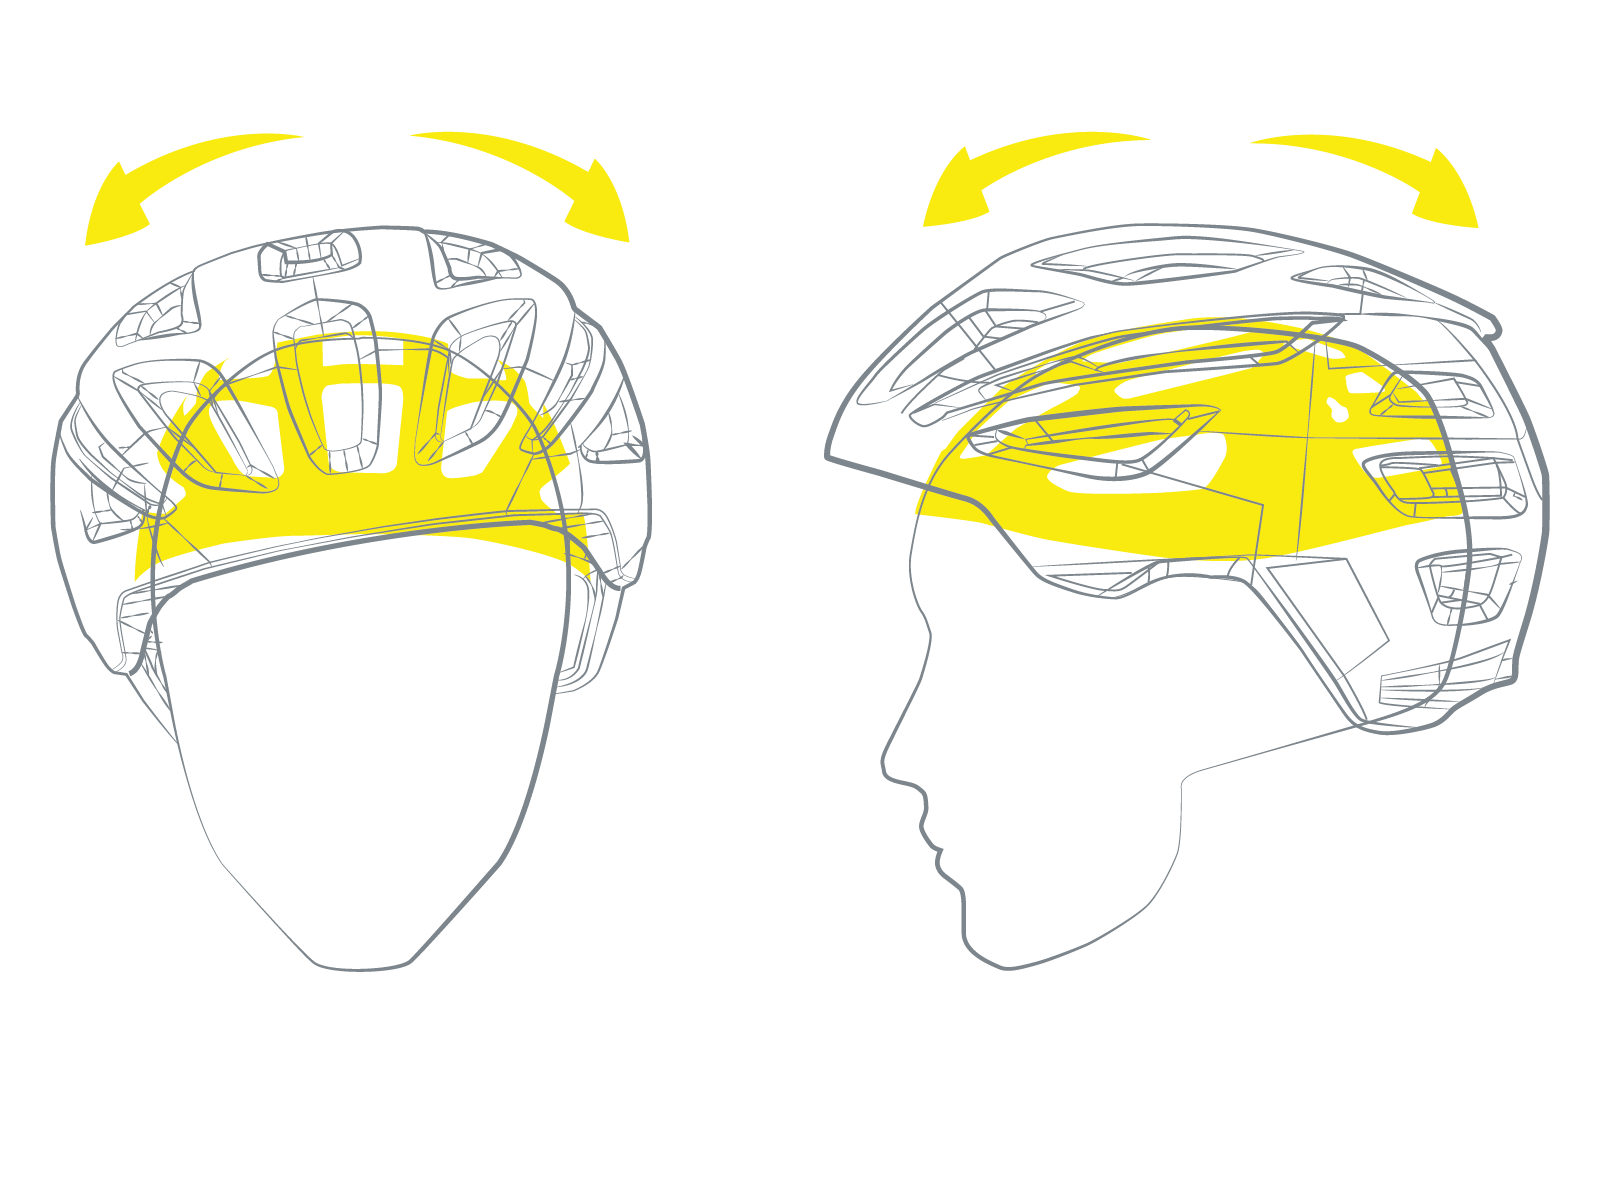 MIPS Helmets Take Top 4 Spots in Virginia Tech Rankings